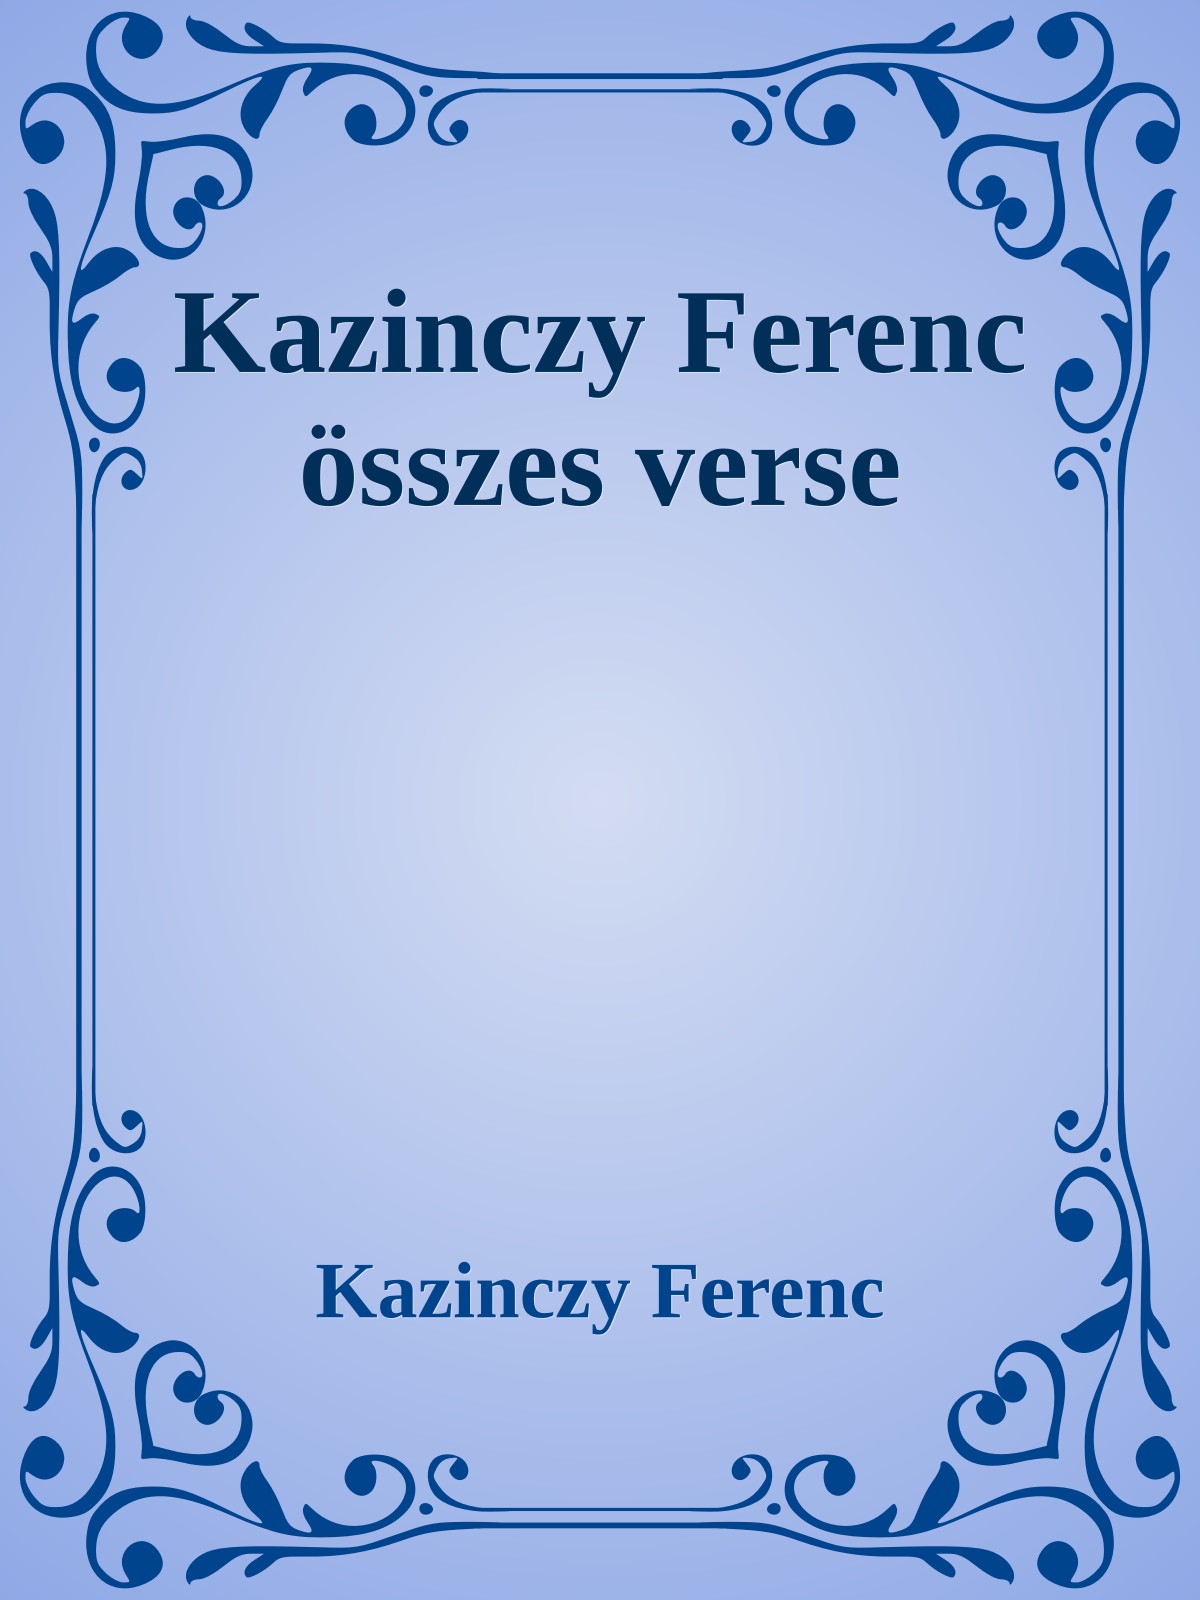 Kazinczy Ferenc öszes verse